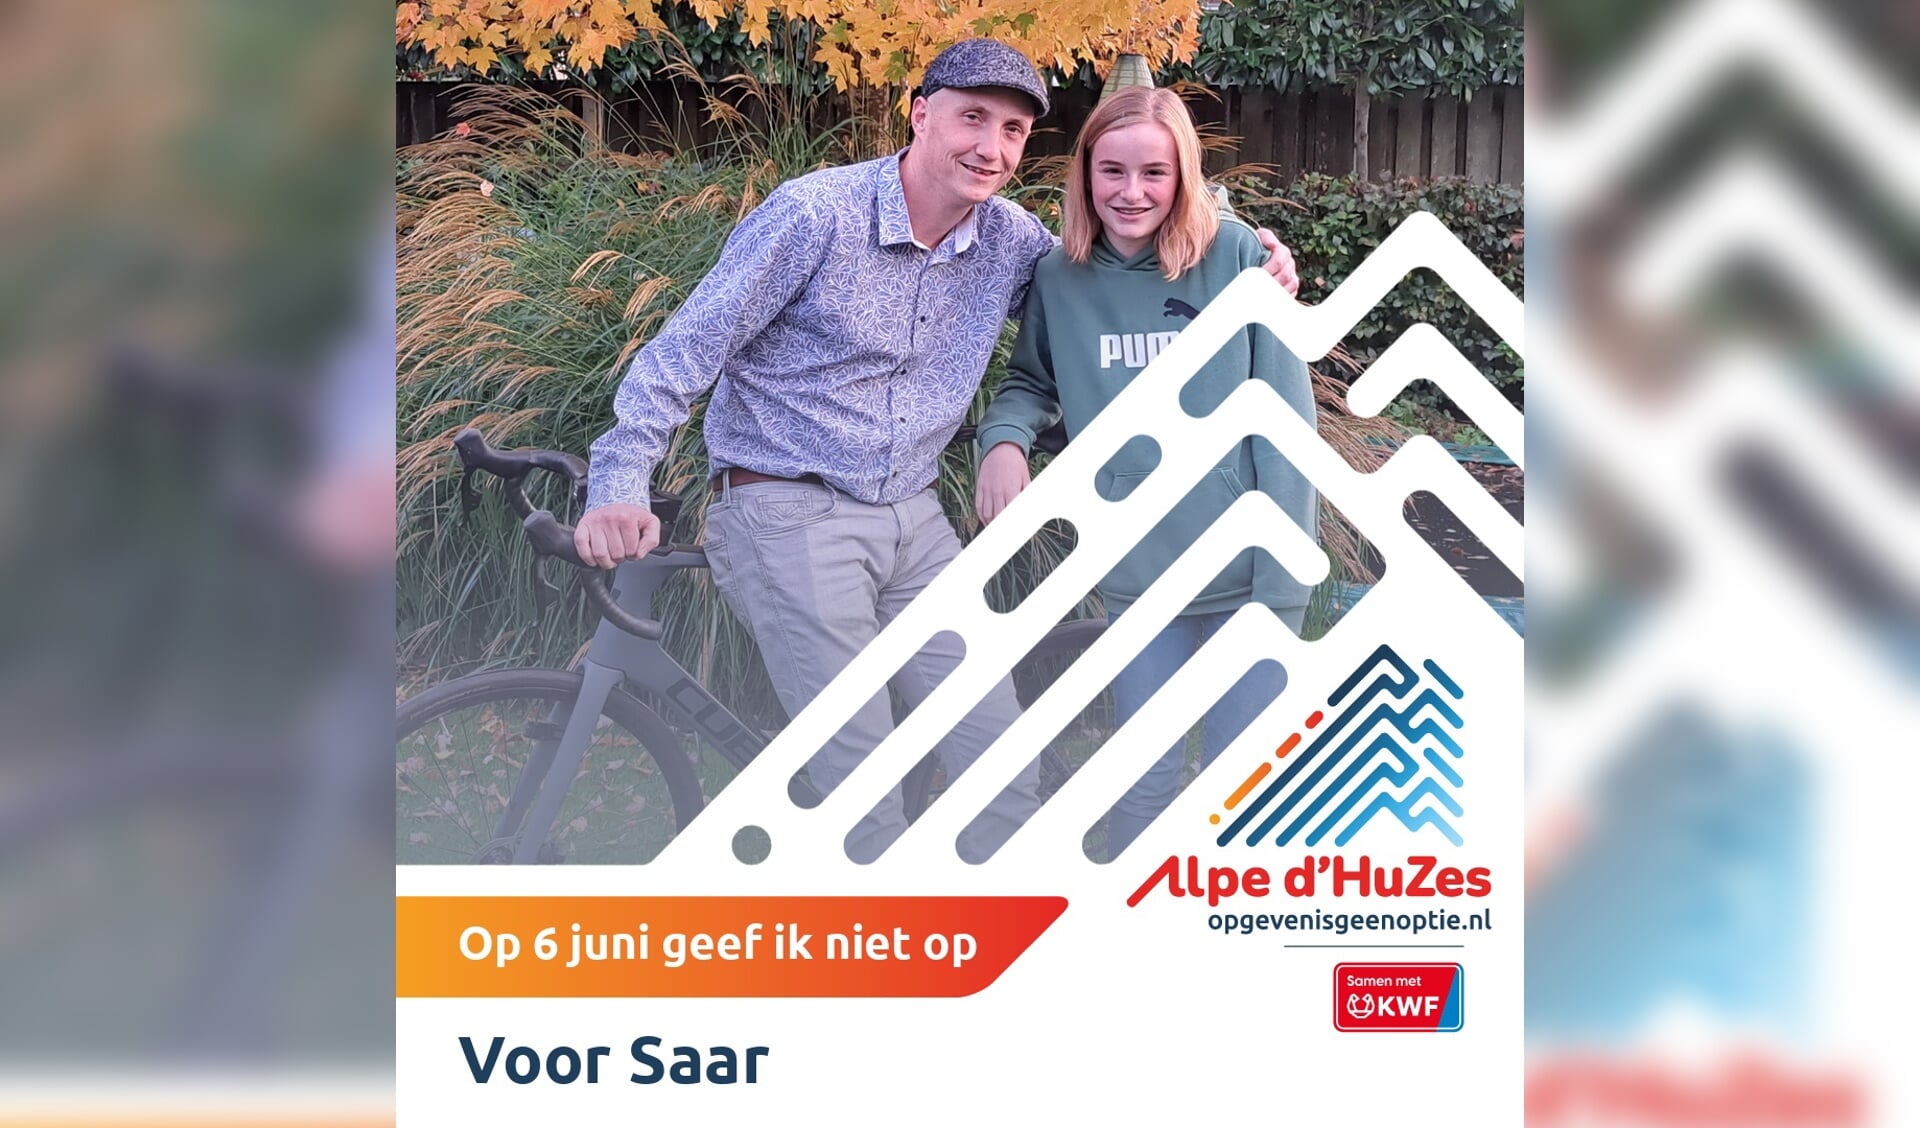 Vader Peter en dochter Saar Winkelmolen hopen zoveel mogelijk geld in te zamelen in de strijd tegen kanker. 